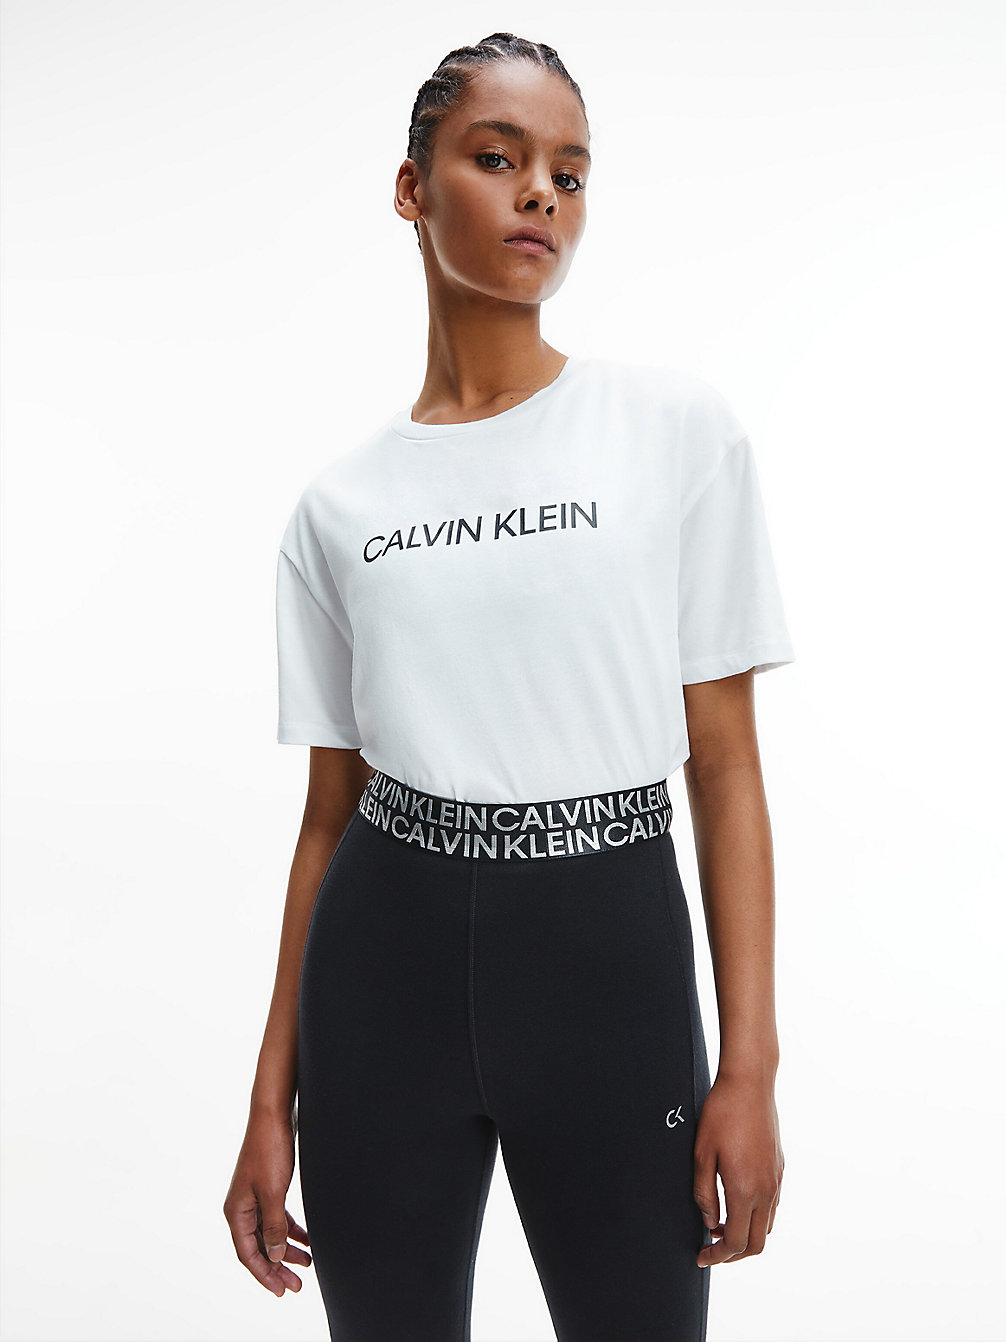 BRIGHT WHITE Lässiges Gym-T-Shirt Mit Logo undefined Damen Calvin Klein